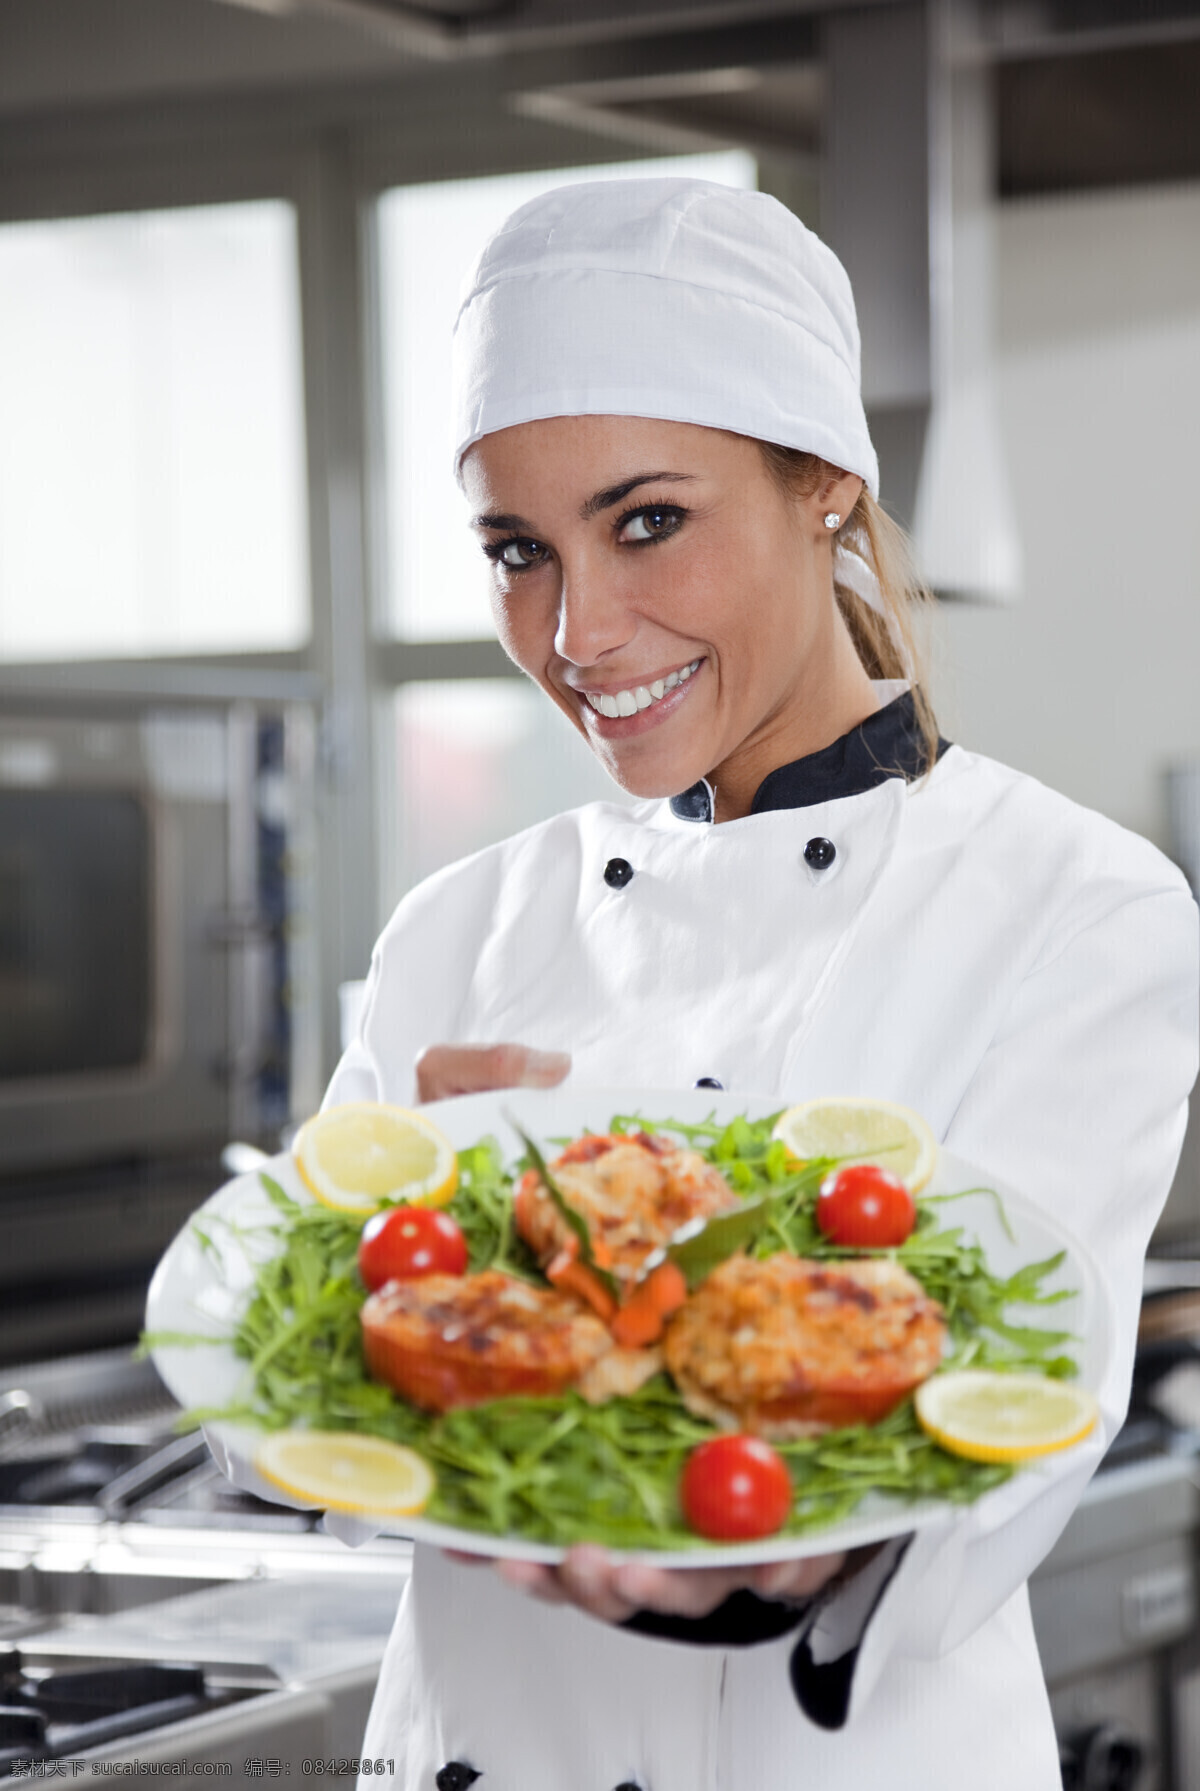 端 美食 美女 厨师 美女厨师 微笑 自信 笑容 菜 餐饮服务业 人物摄影 高清图片 商务人士 人物图片